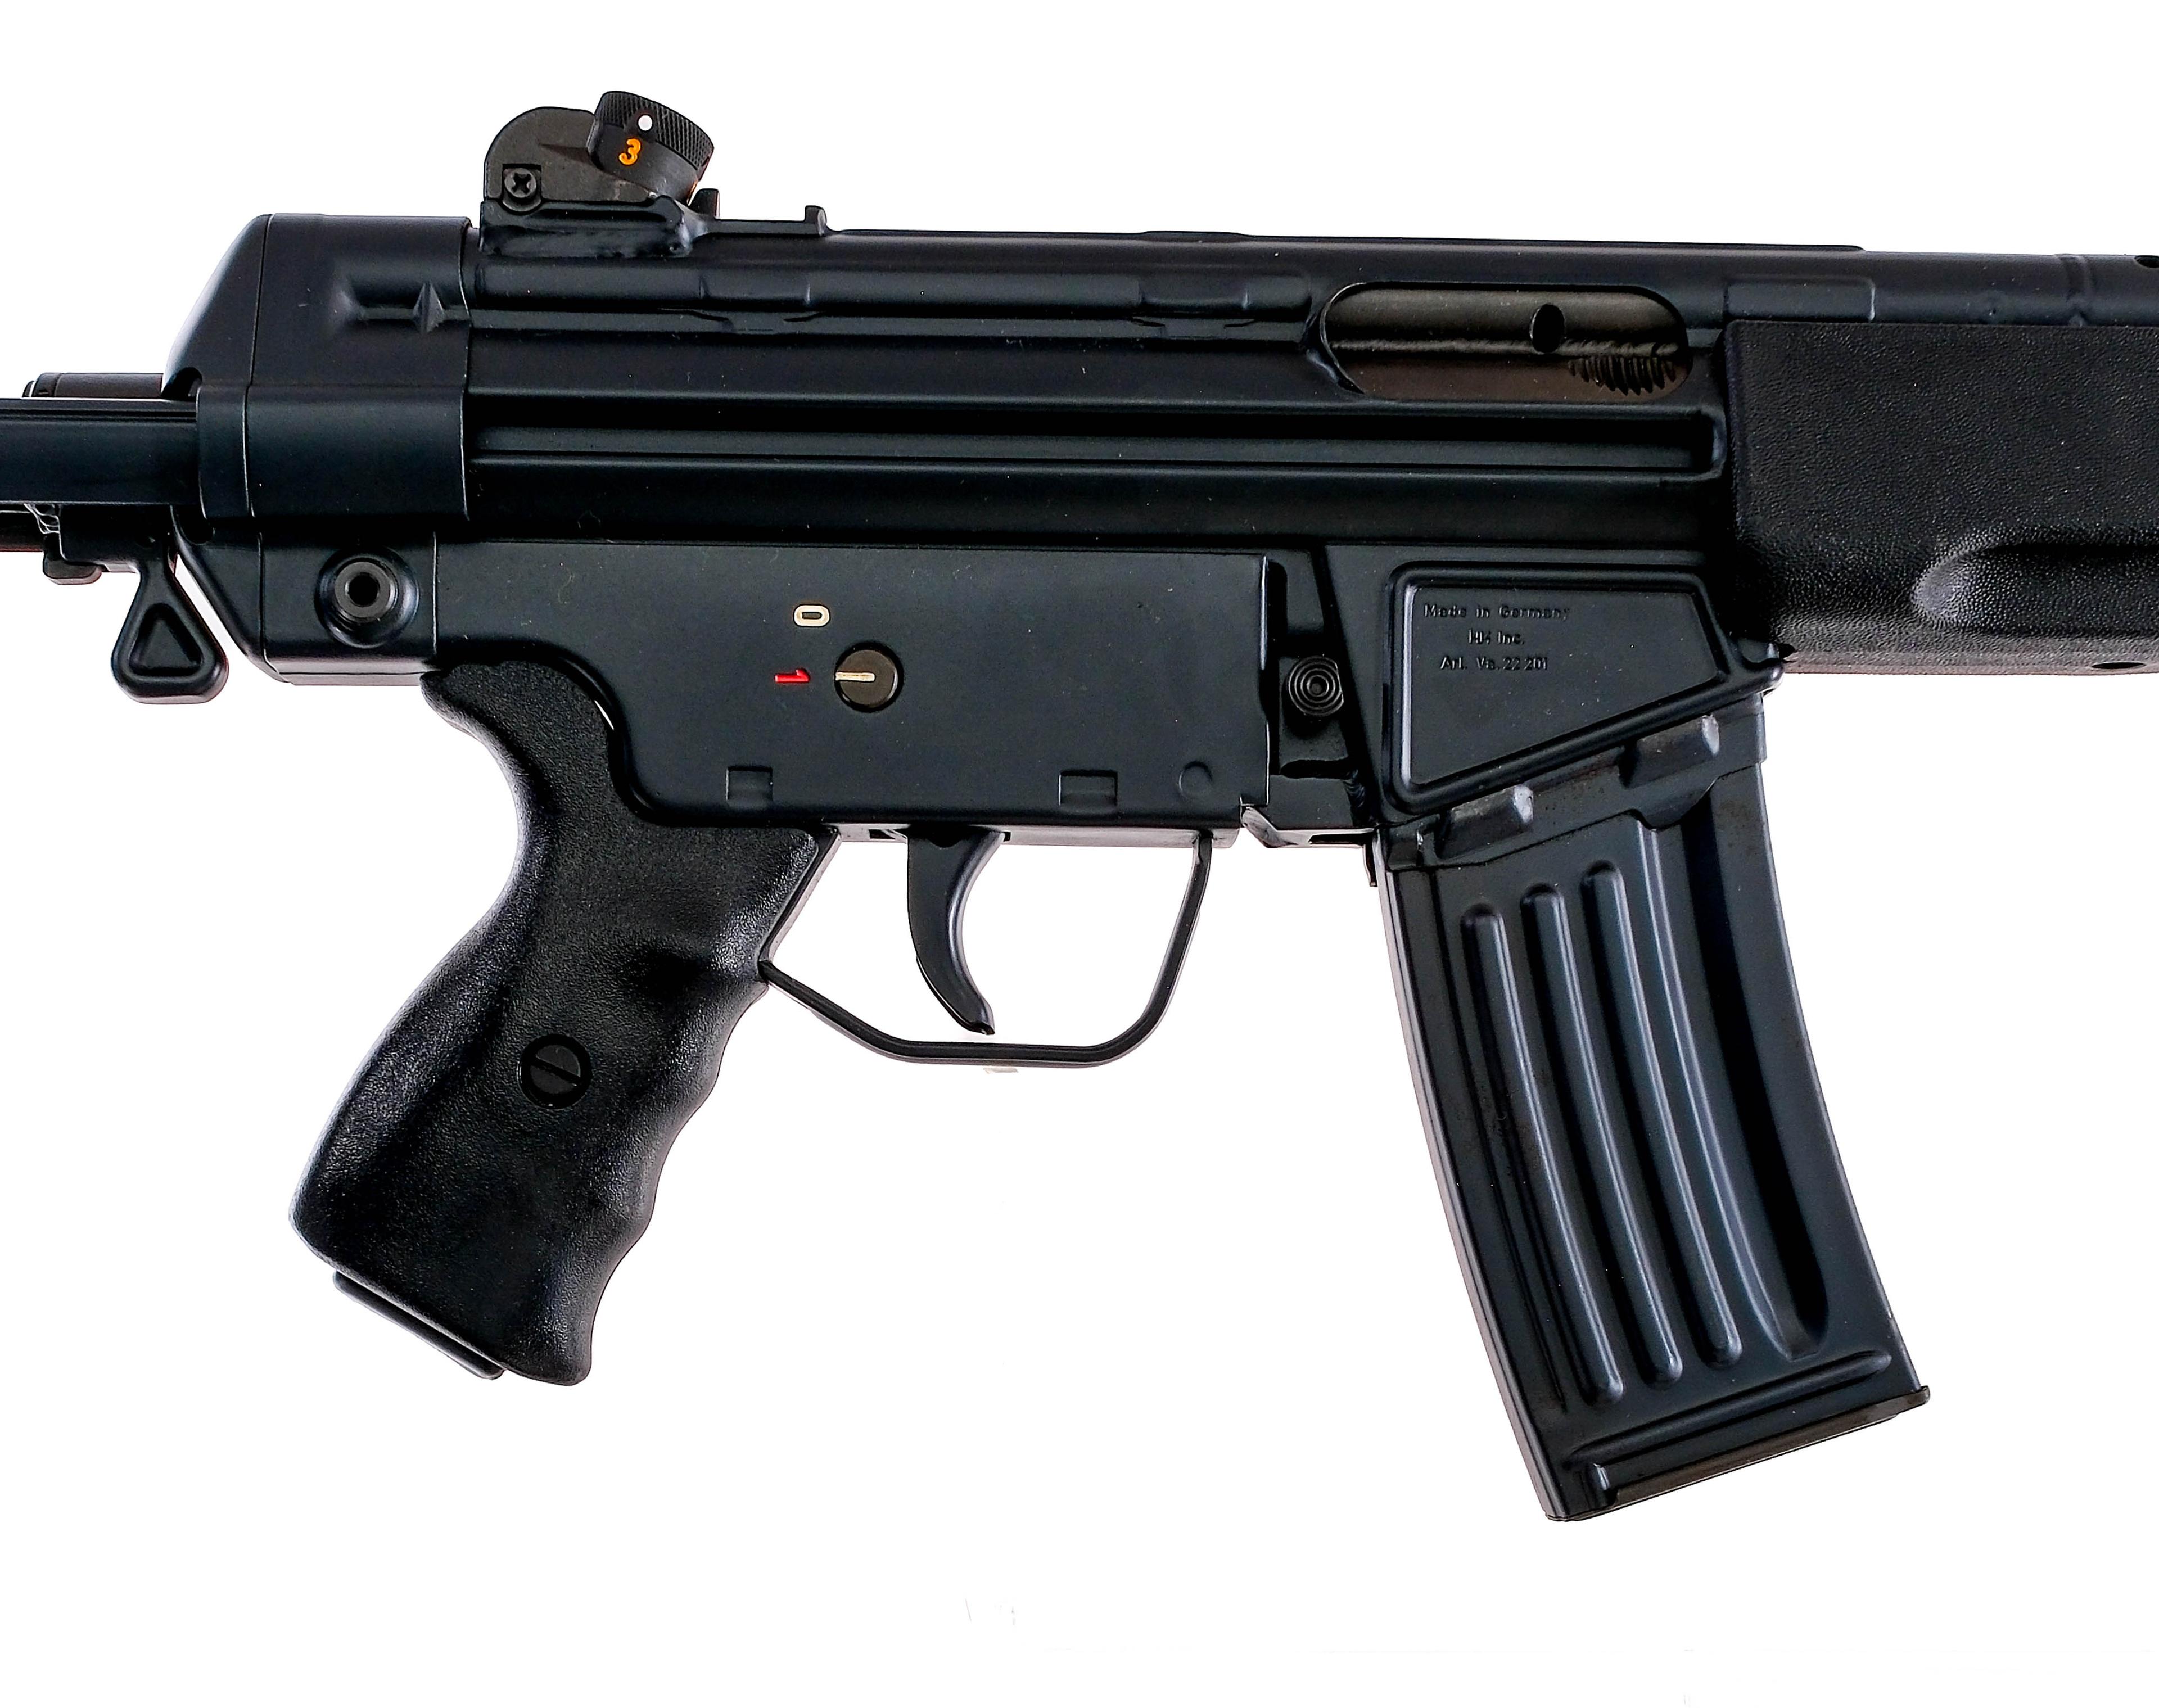 HK 93 5.56 NATO Semi Auto Rifle